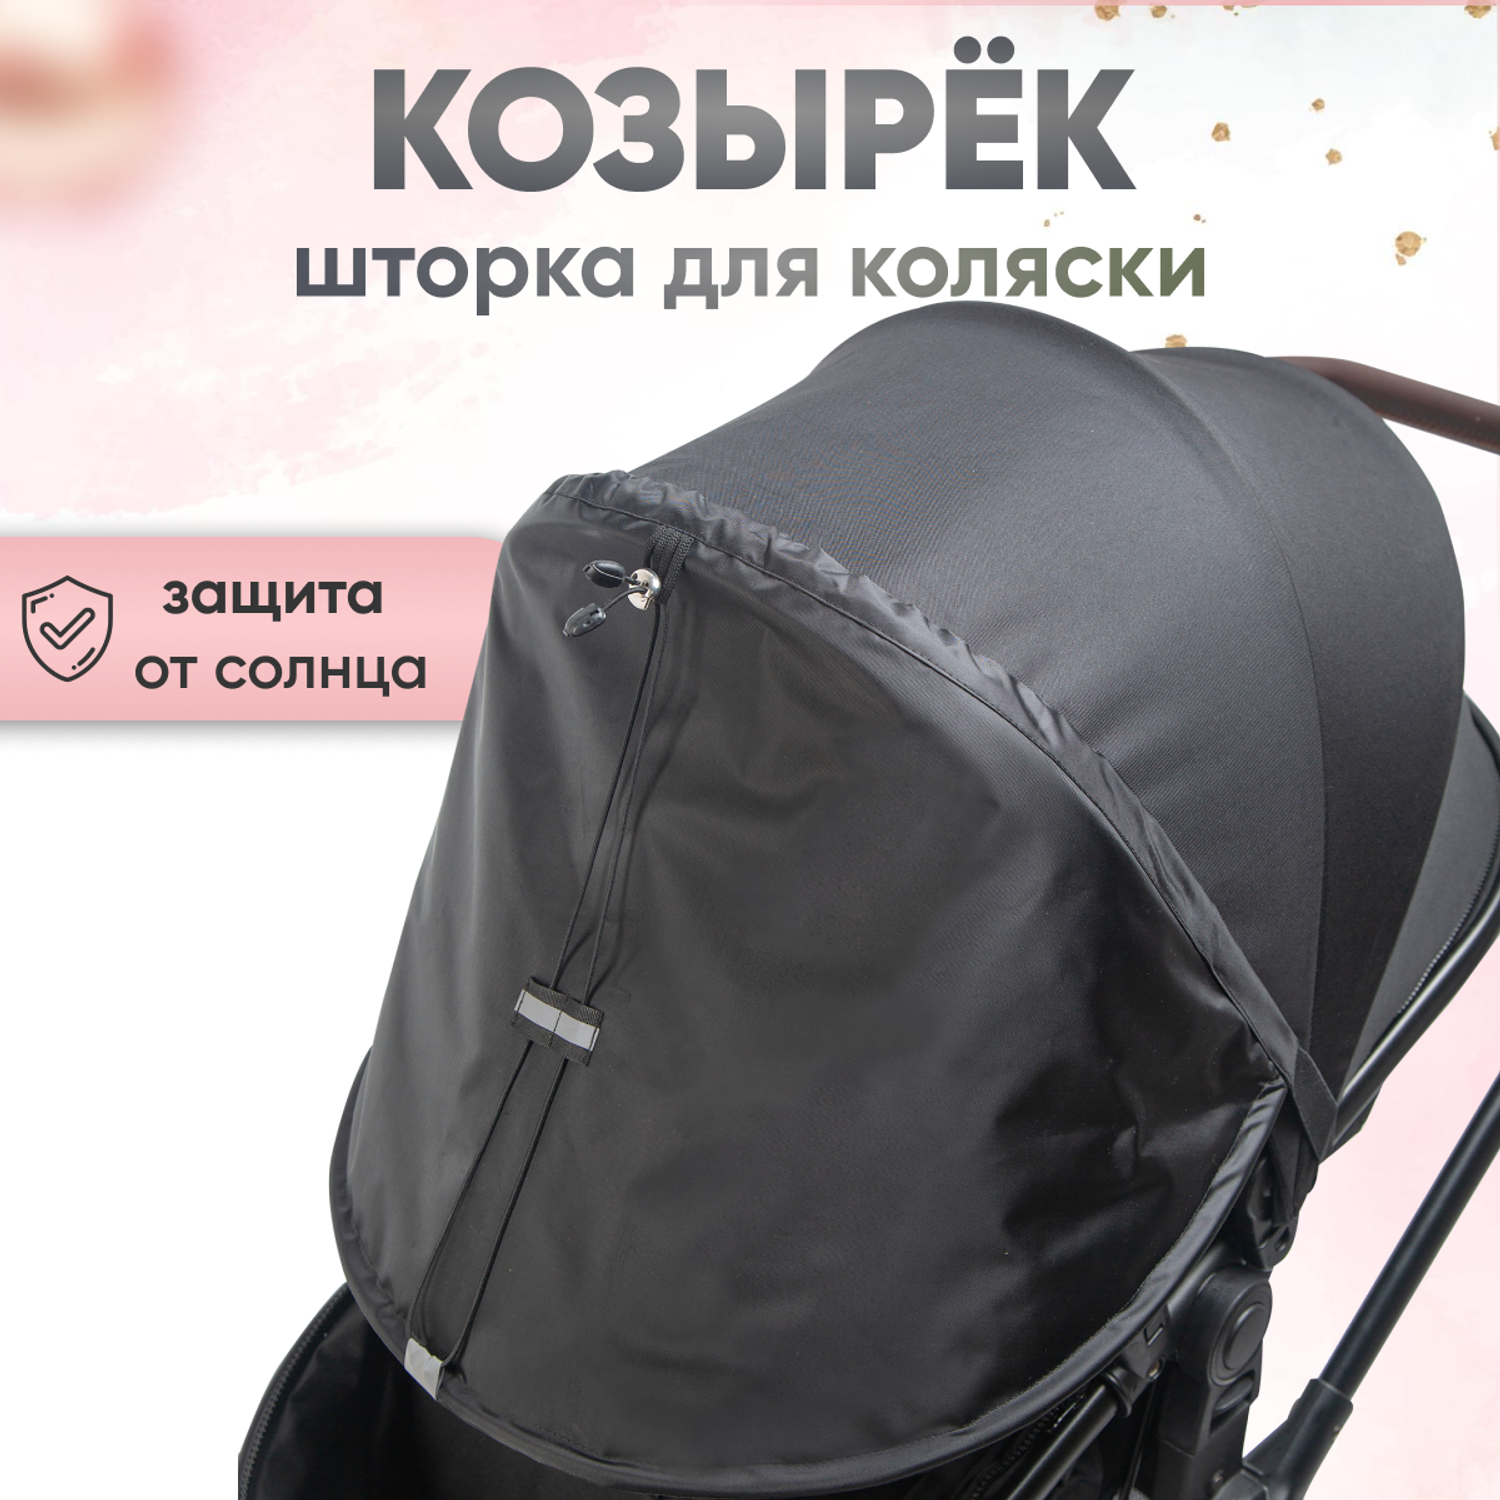 Козырек для коляски от солнца StrollerAcss для всех моделей SA33/Черный - фото 1